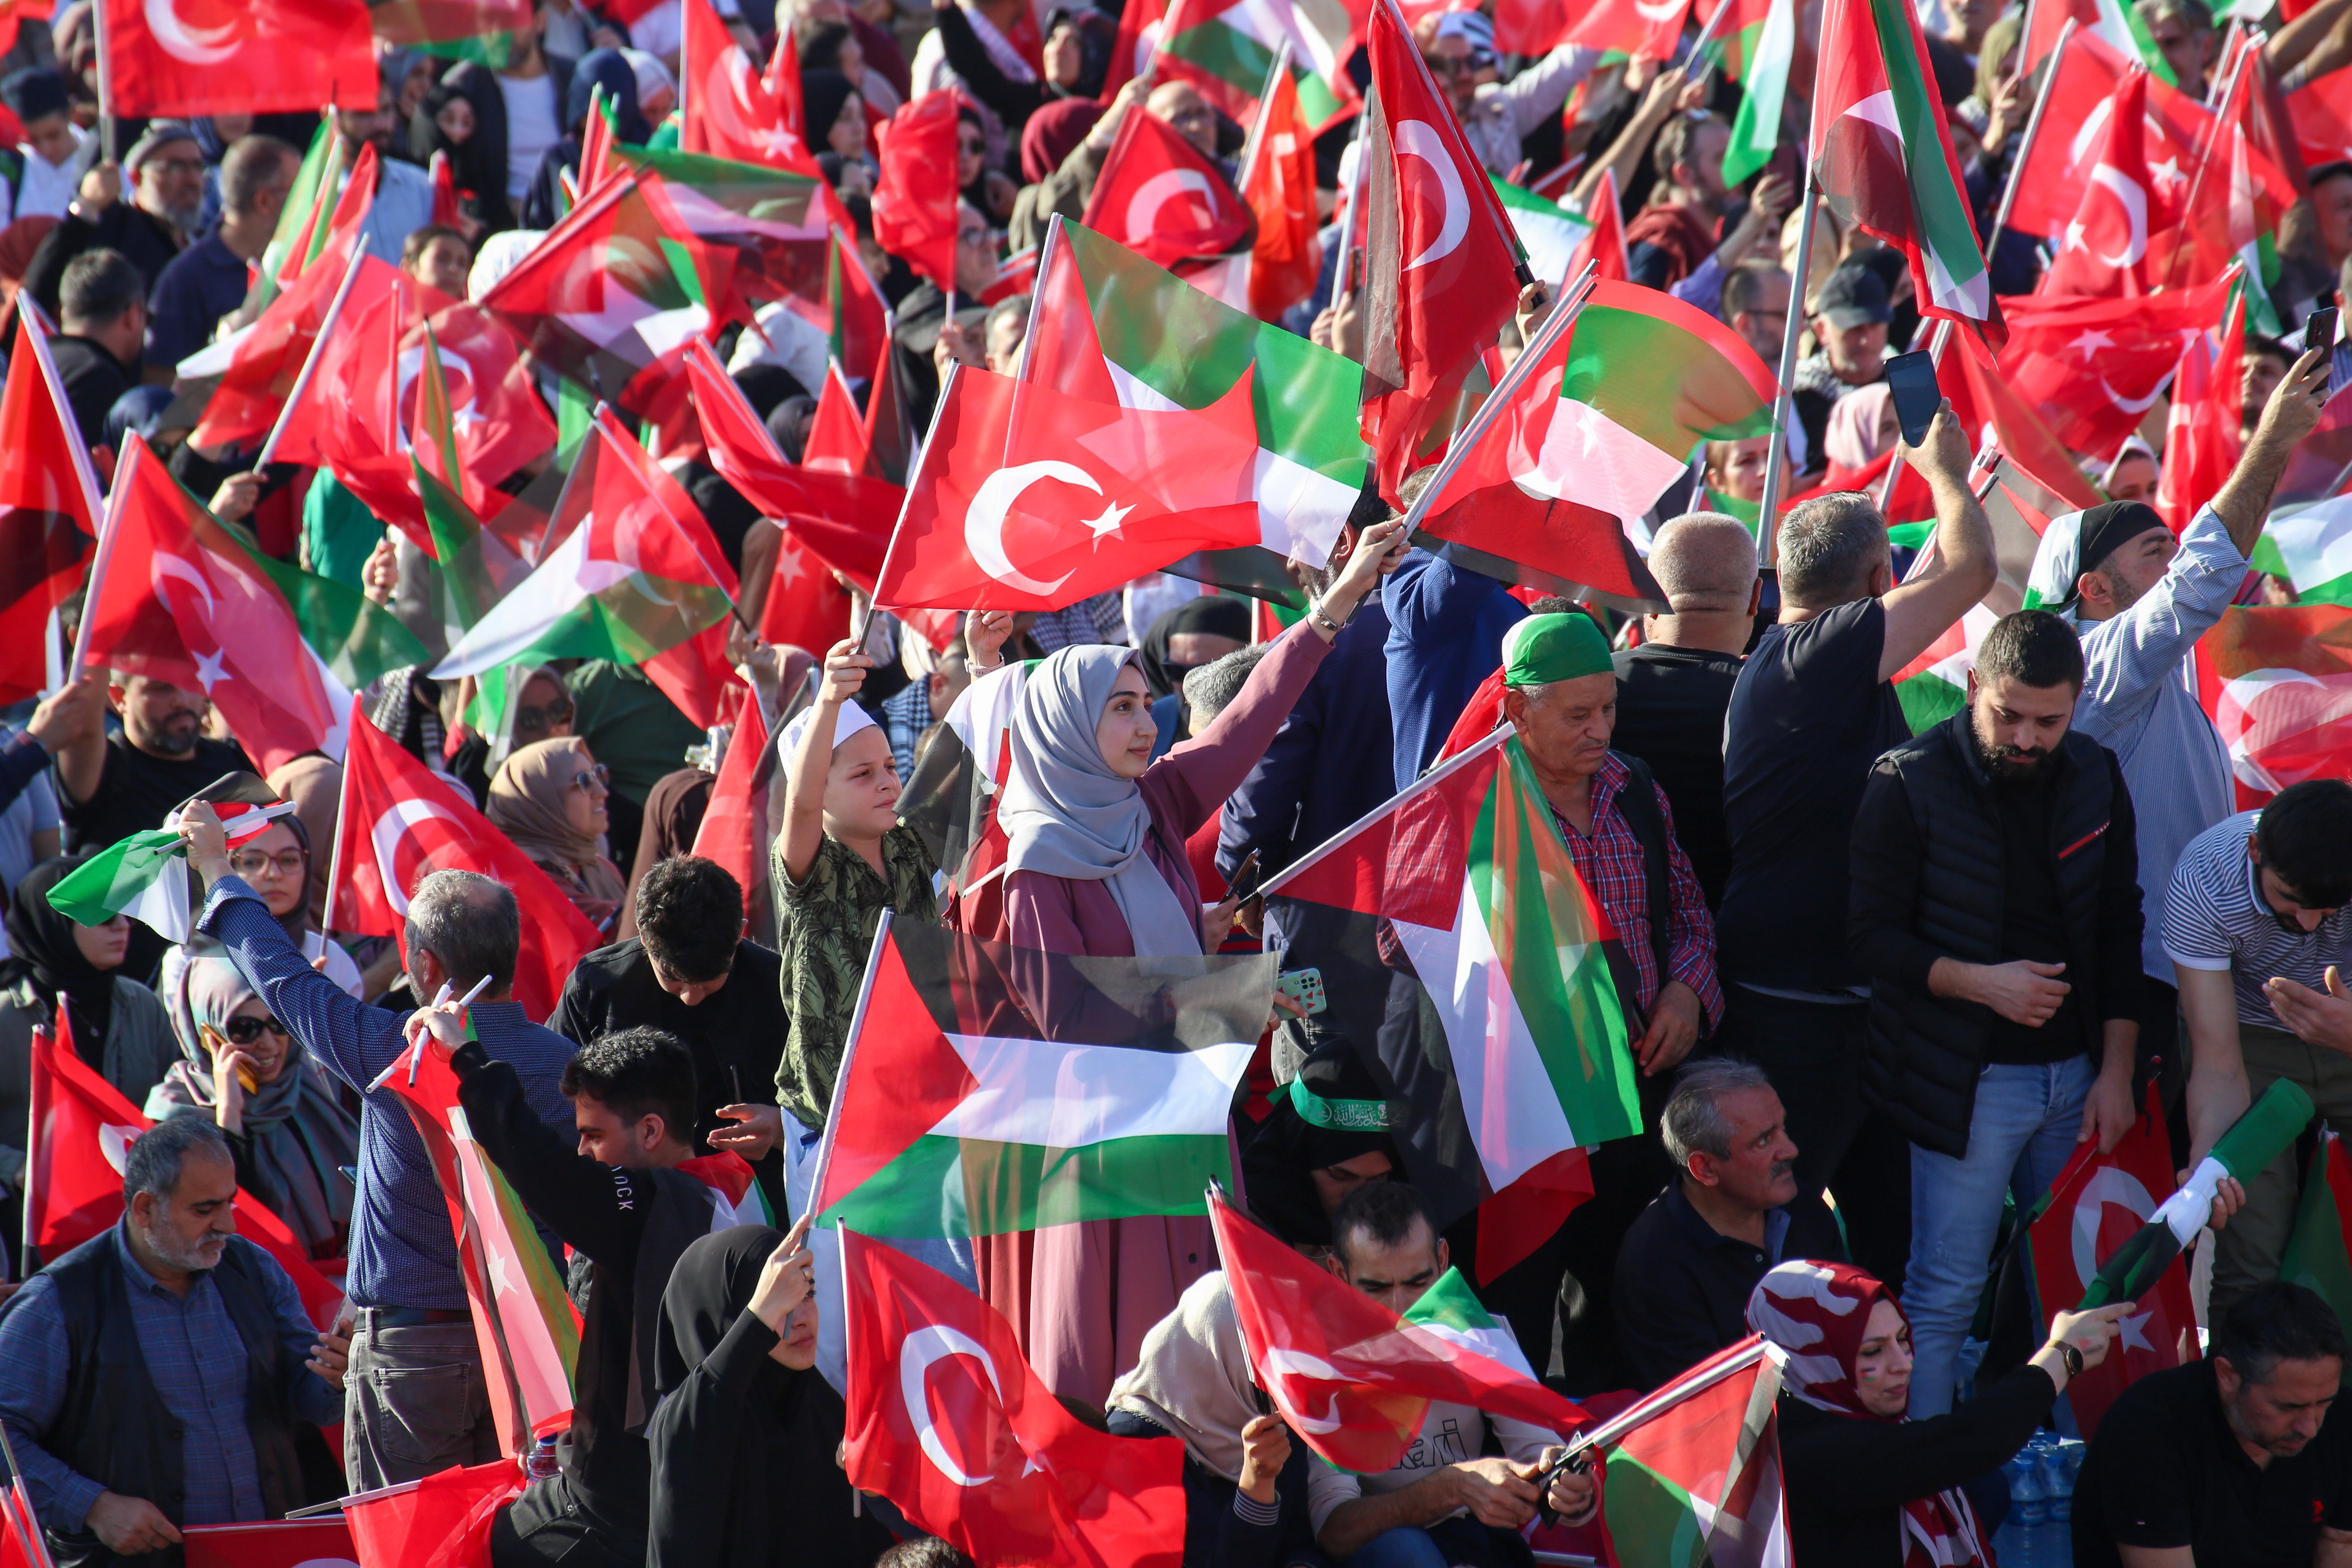 Nahostkrieg - Hunderttausende bei pro-palästinensischer Massenkundgebung in Istanbul - Erdogan und Yusuf/Cat Stevens verurteilen Israel